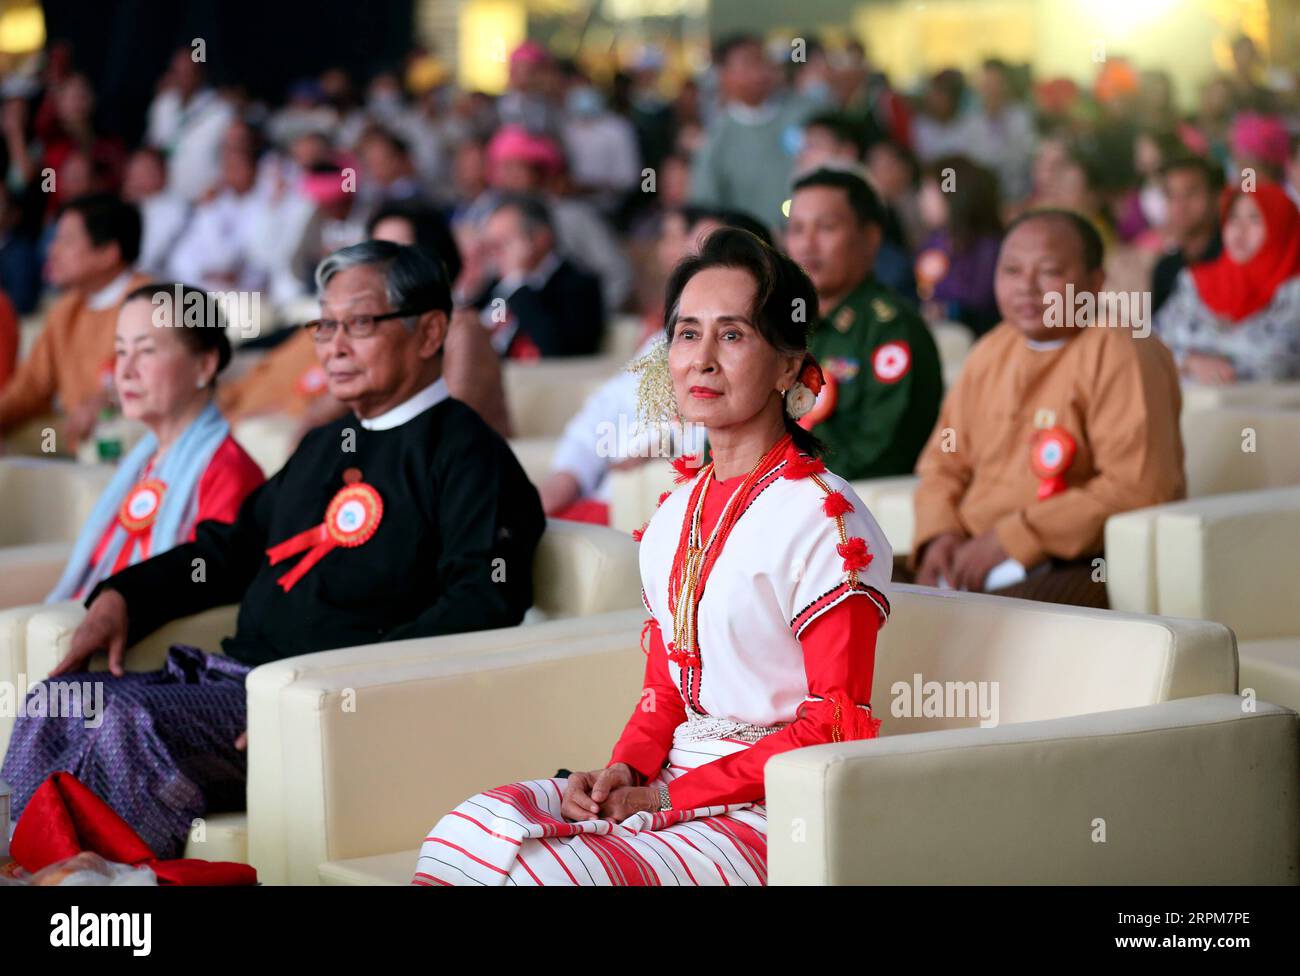 200201 -- YANGON, le 1 février 2020 -- Aung San Suu Kyi, conseillère d'État du Myanmar, assiste à la cérémonie d'ouverture du Festival de la culture ethnique du Myanmar à Yangon, Myanmar, le 1 février 2020. Un festival de la culture ethnique a débuté samedi à Yangon, avec la participation de divers groupes ethniques de tout le Myanmar. MYANMAR-YANGON-FESTIVAL DE LA CULTURE ETHNIQUE UxAung PUBLICATIONxNOTxINxCHN Banque D'Images